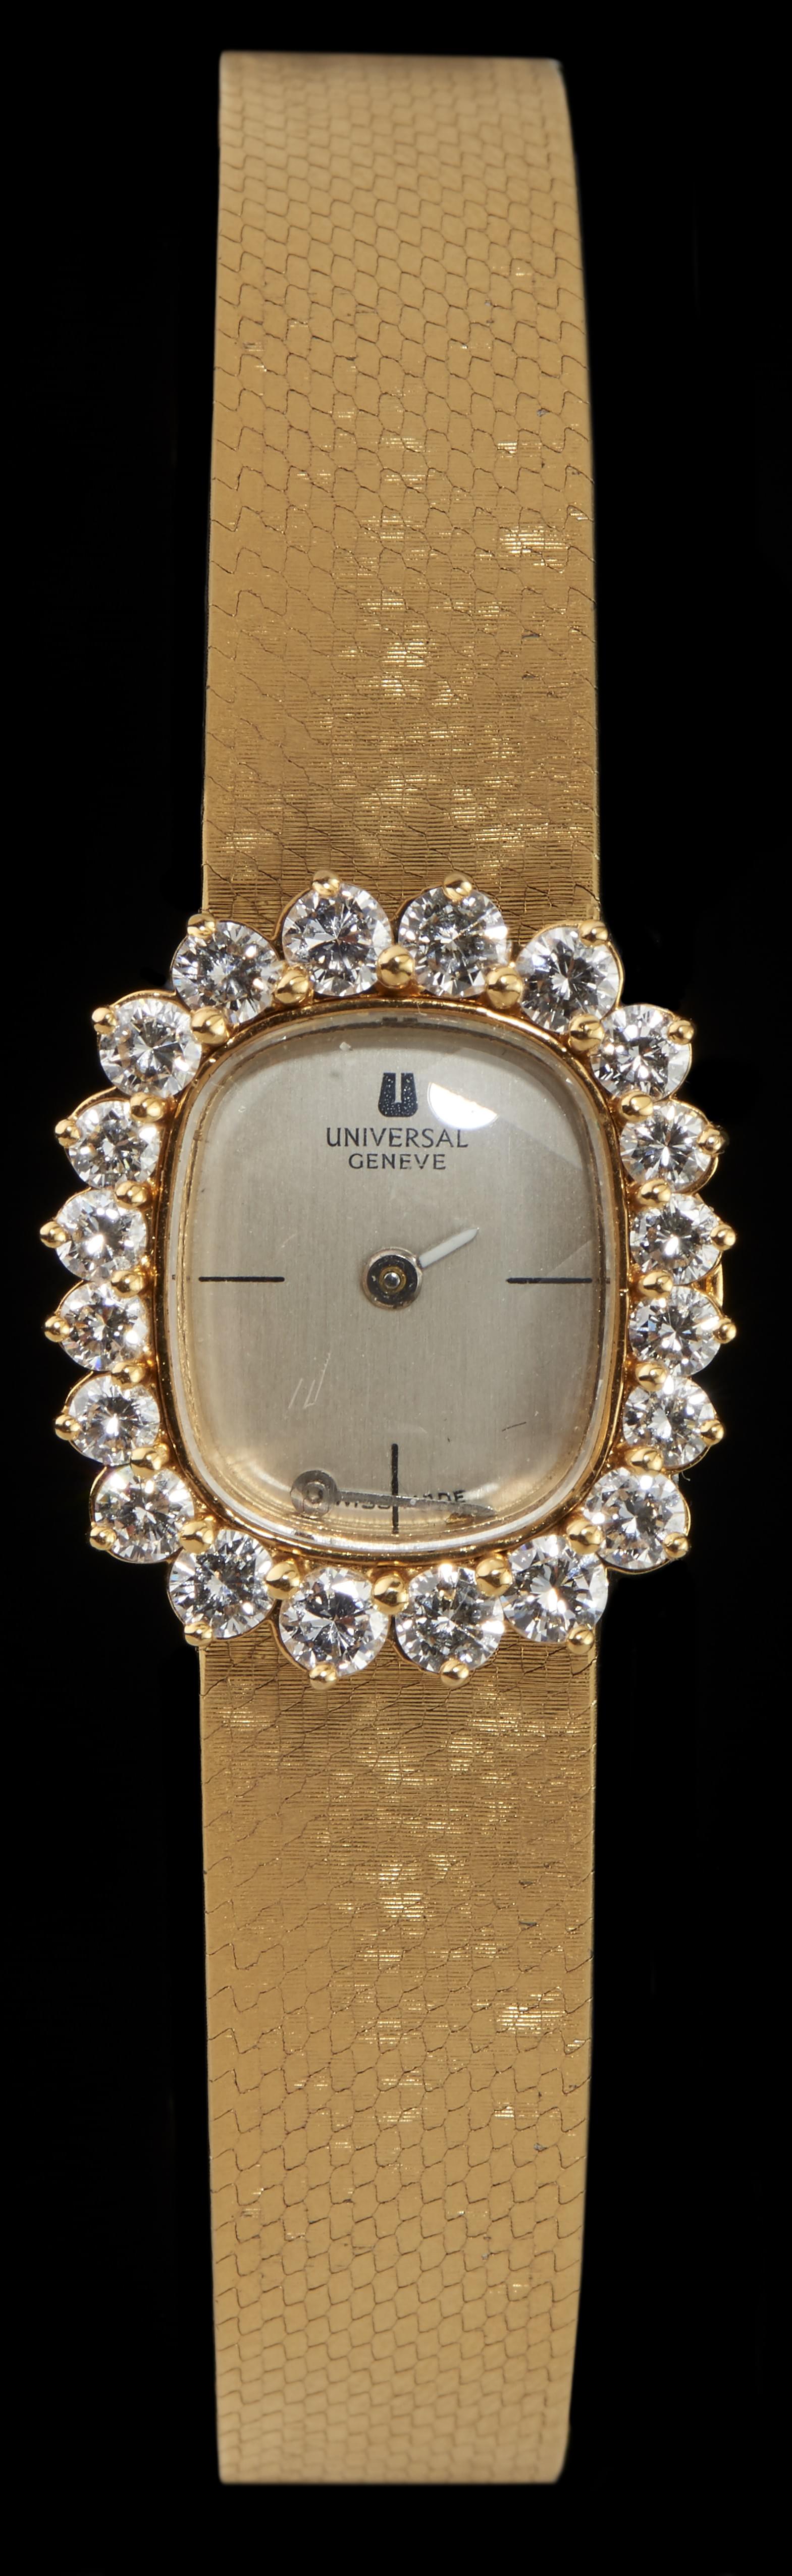 Universal Genève, montre bracelet sertie de diamants (env. 1,8 ct)